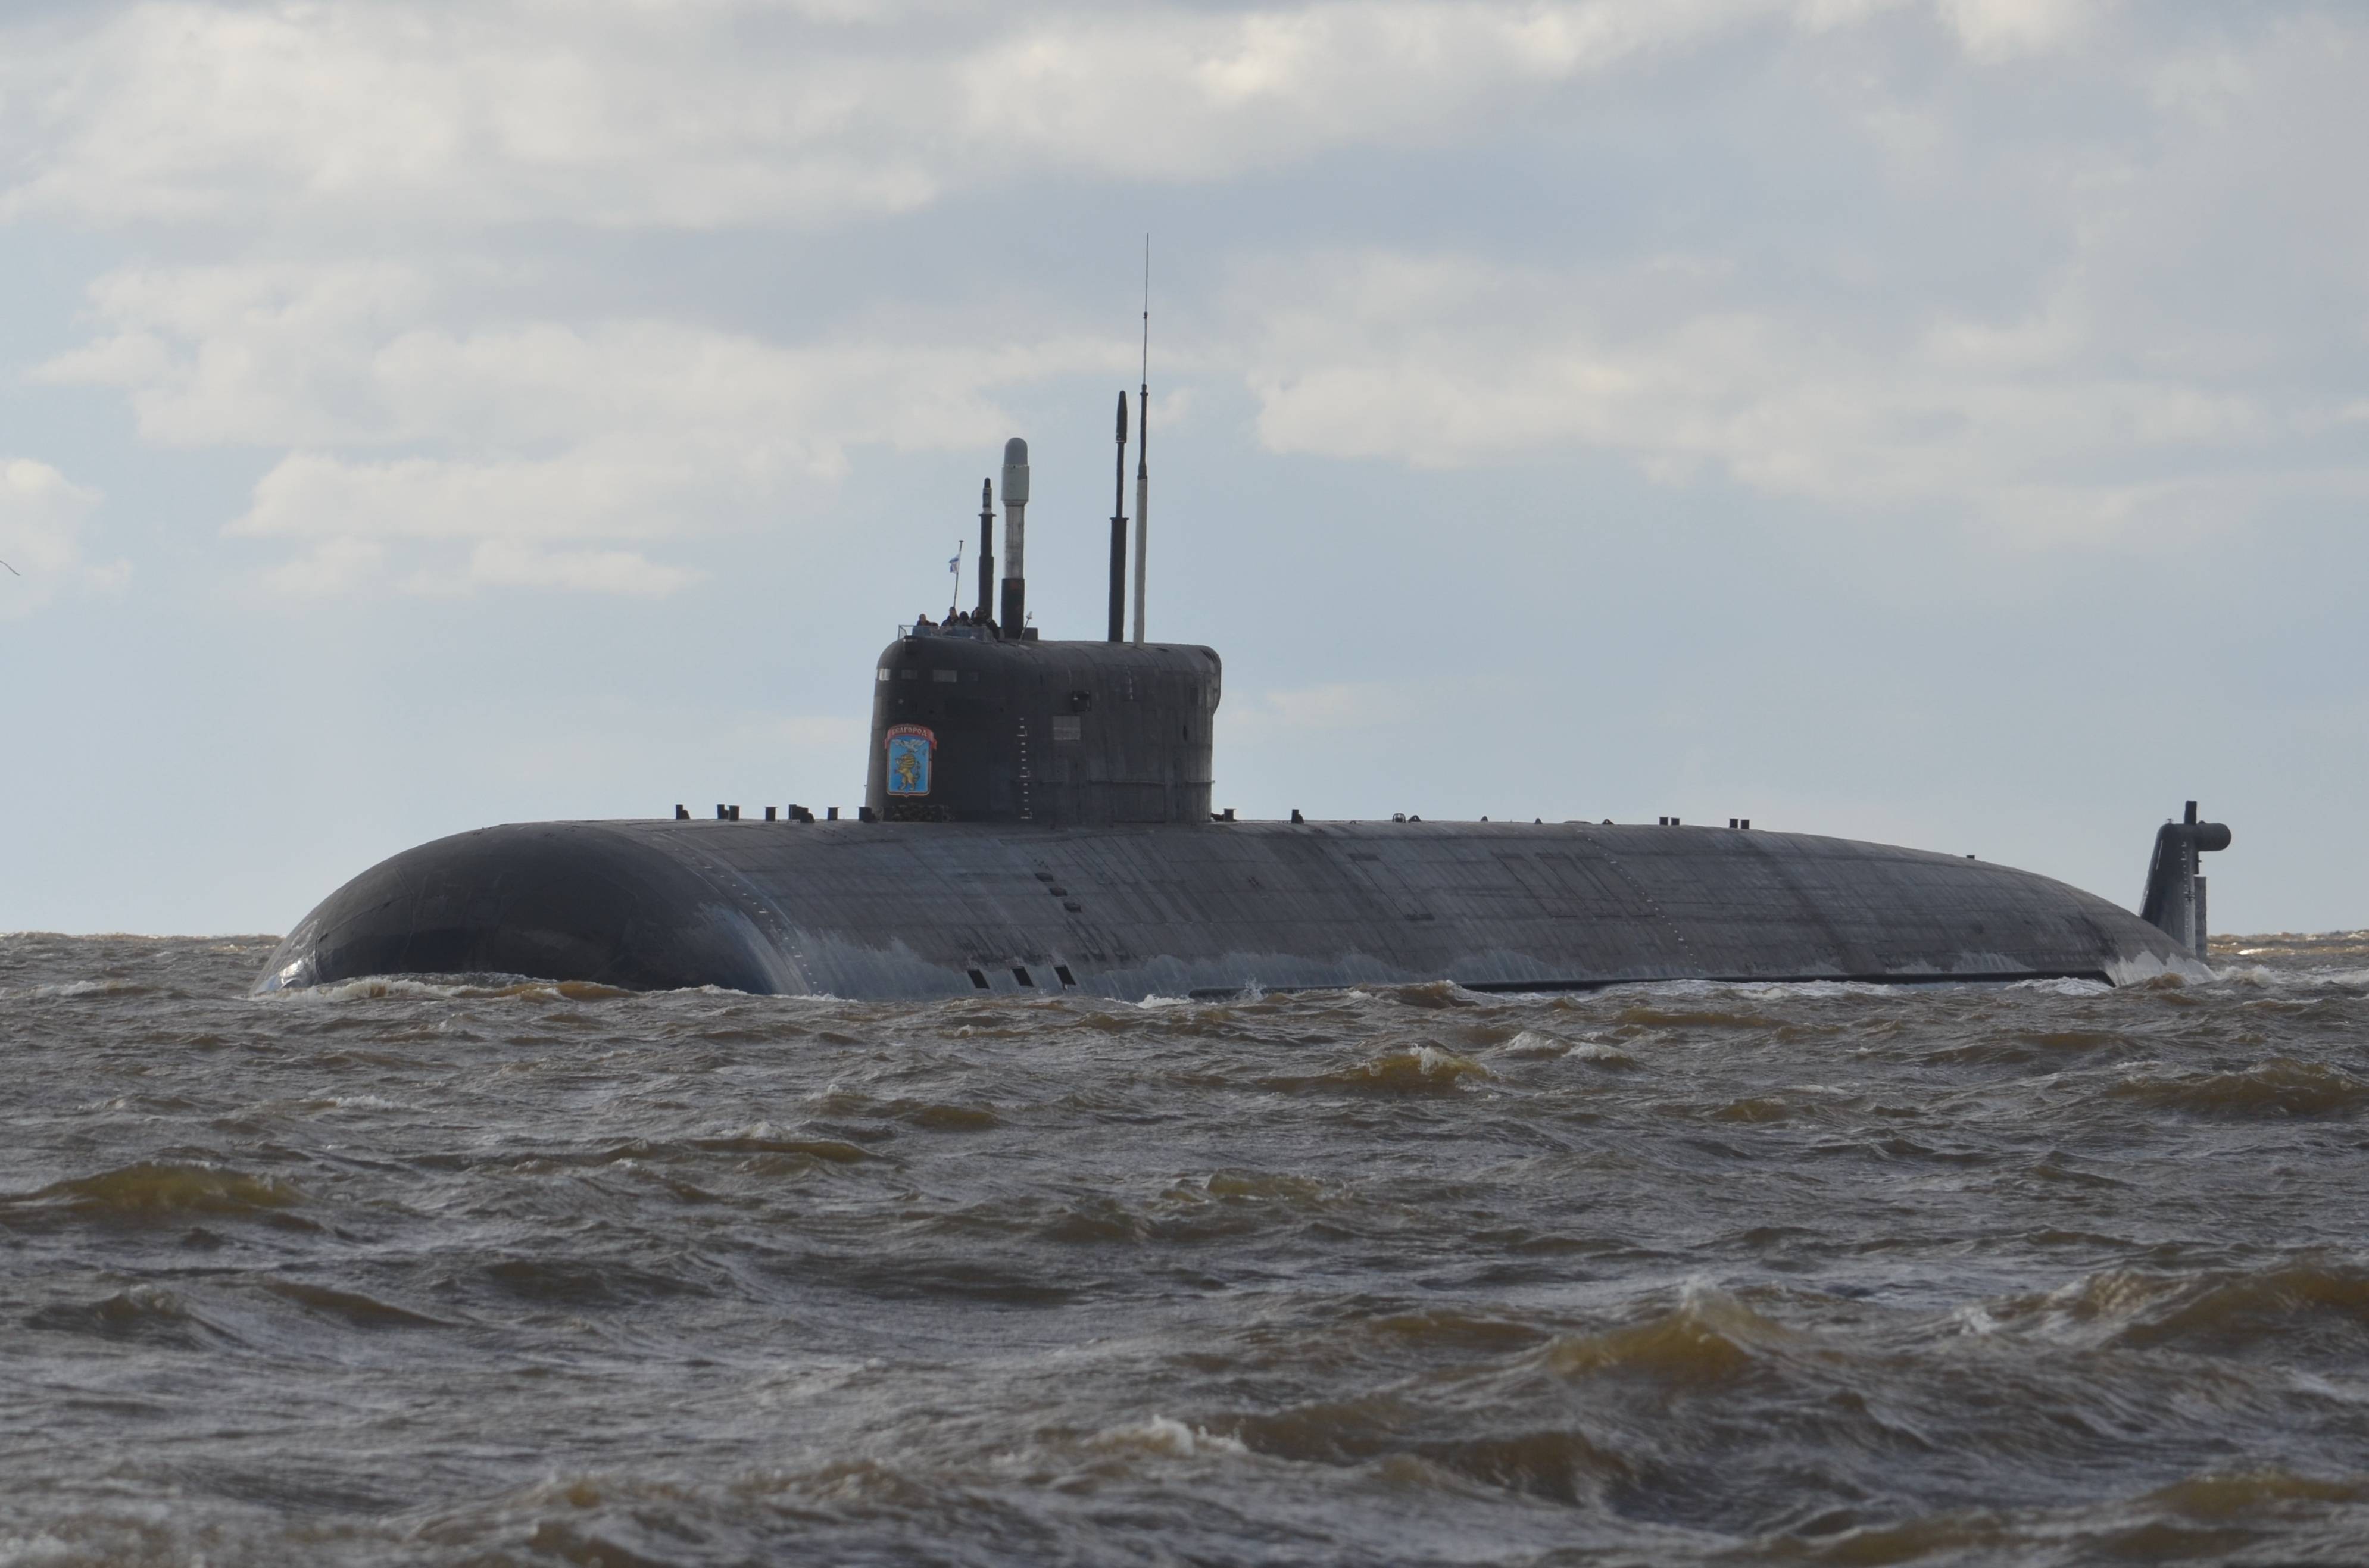 虽然俄罗斯海军的大型水面战舰这些年都较为难缠,但是水下核潜艇这种